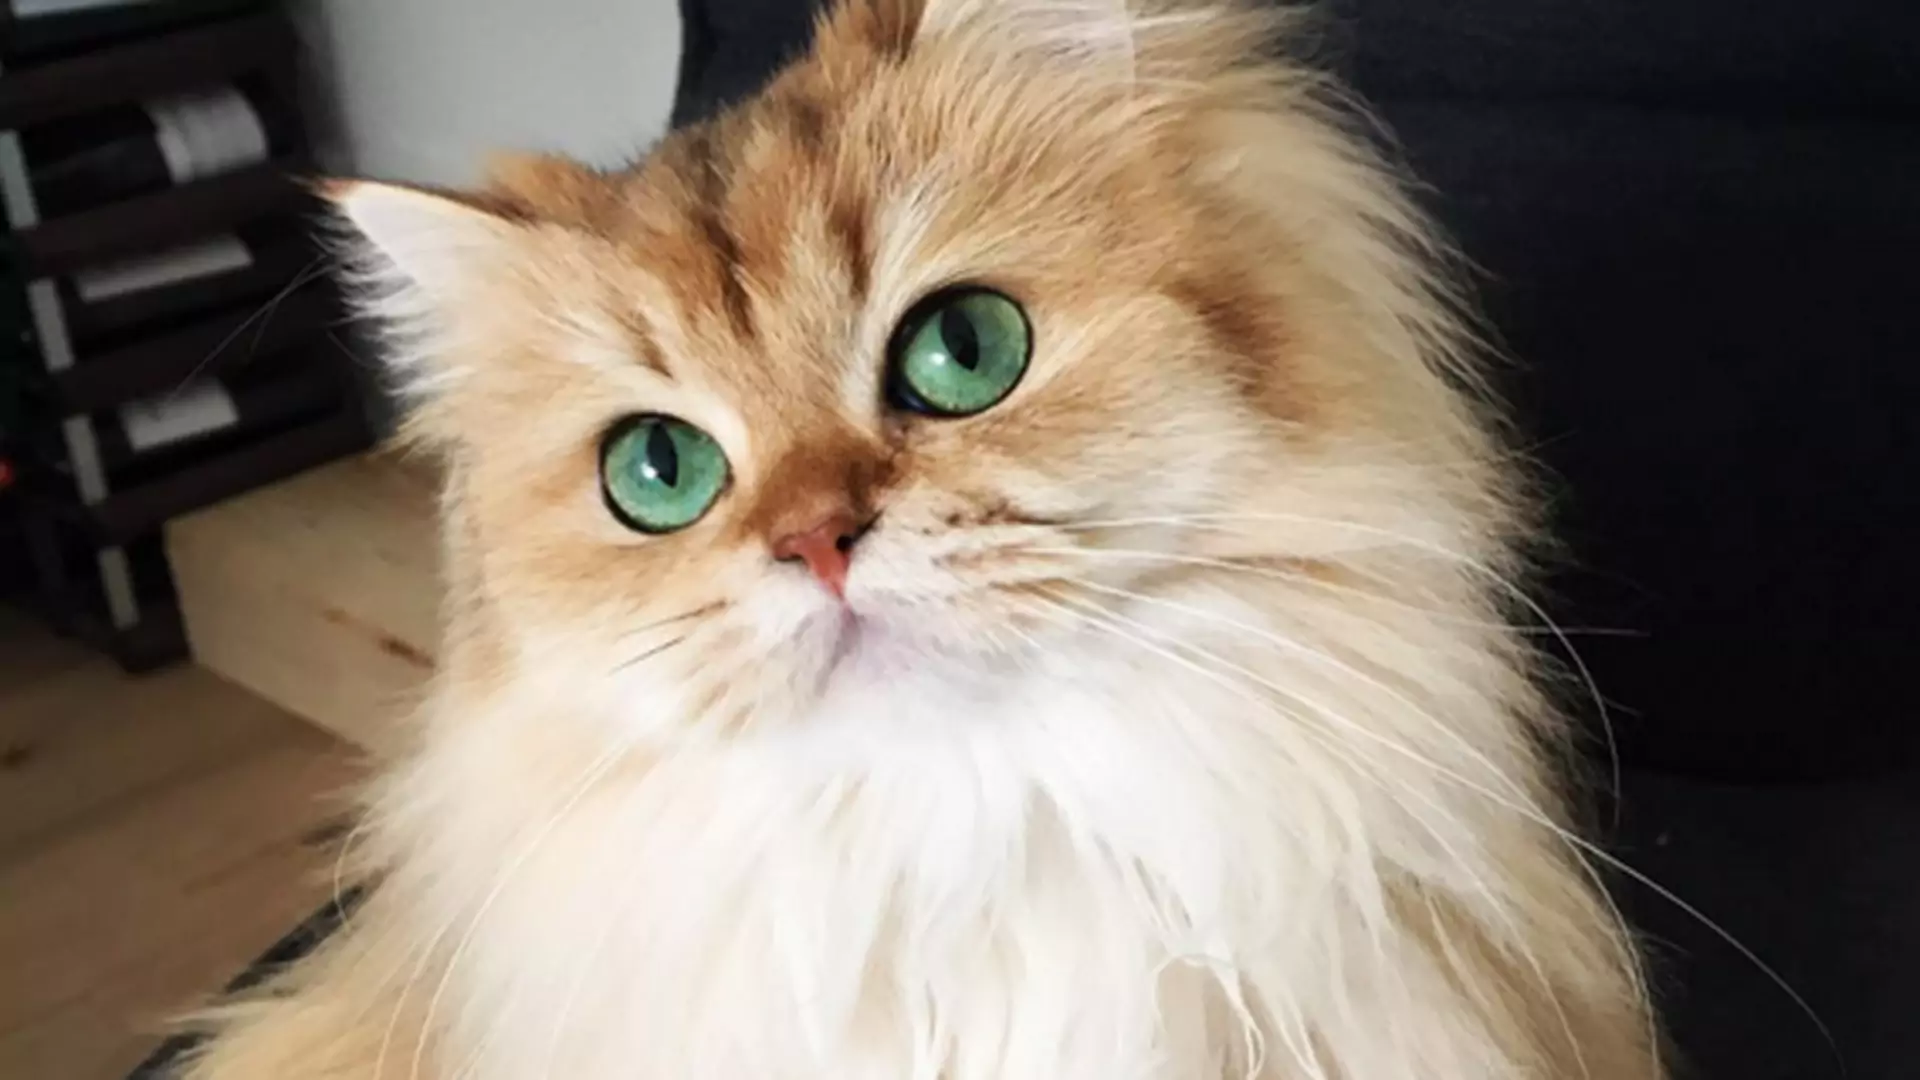 Poznajcie najbardziej fotogenicznego kota na świecie